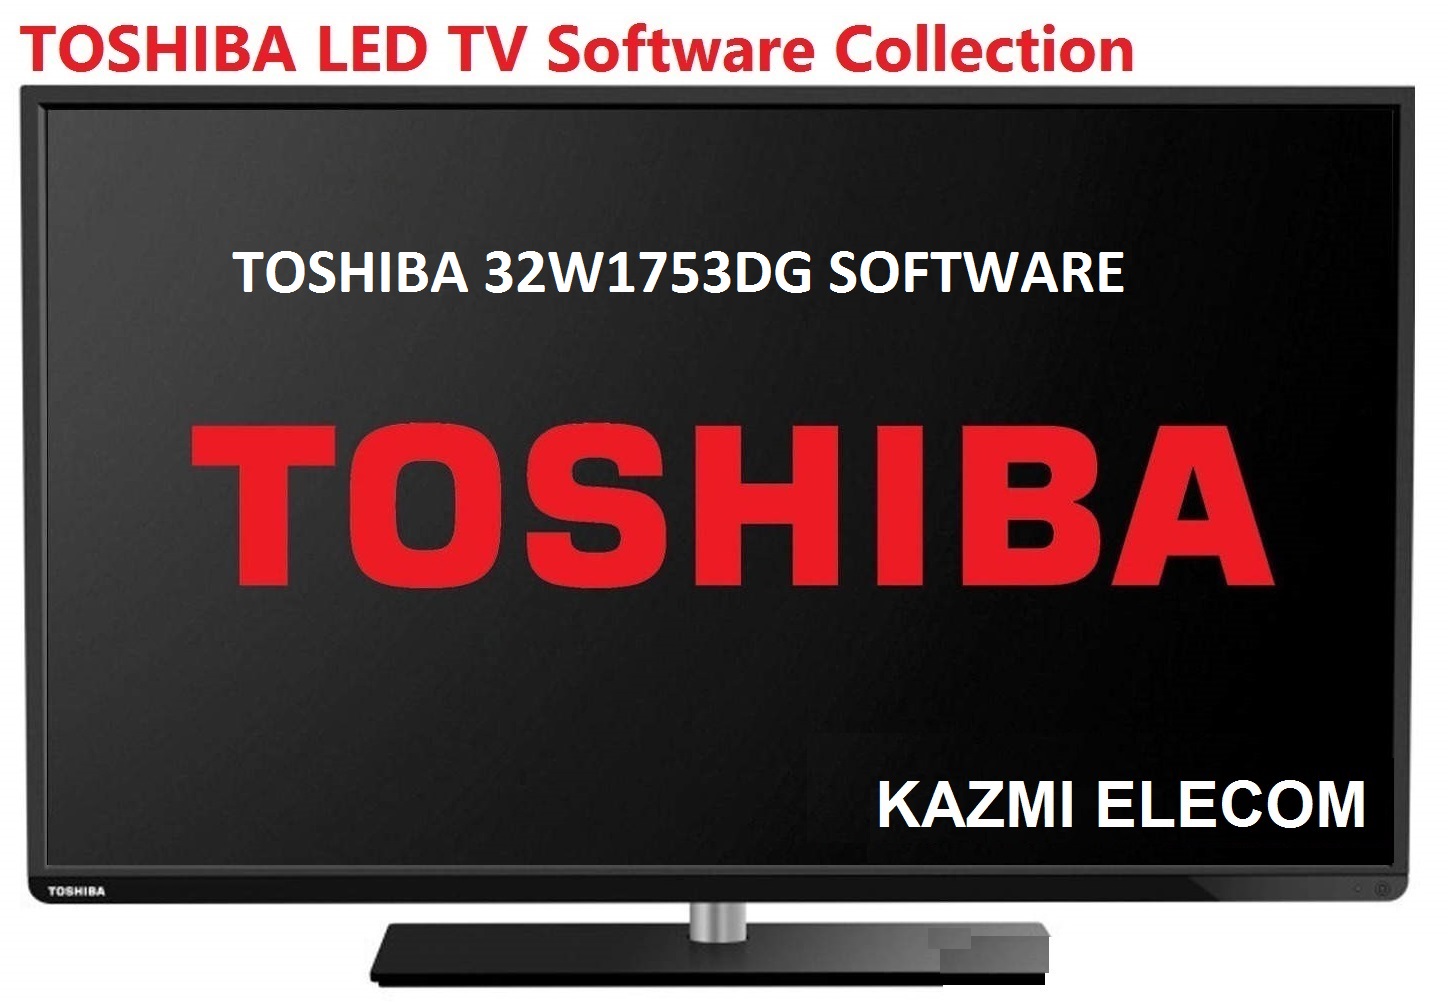 Toshiba 32W1753Dg